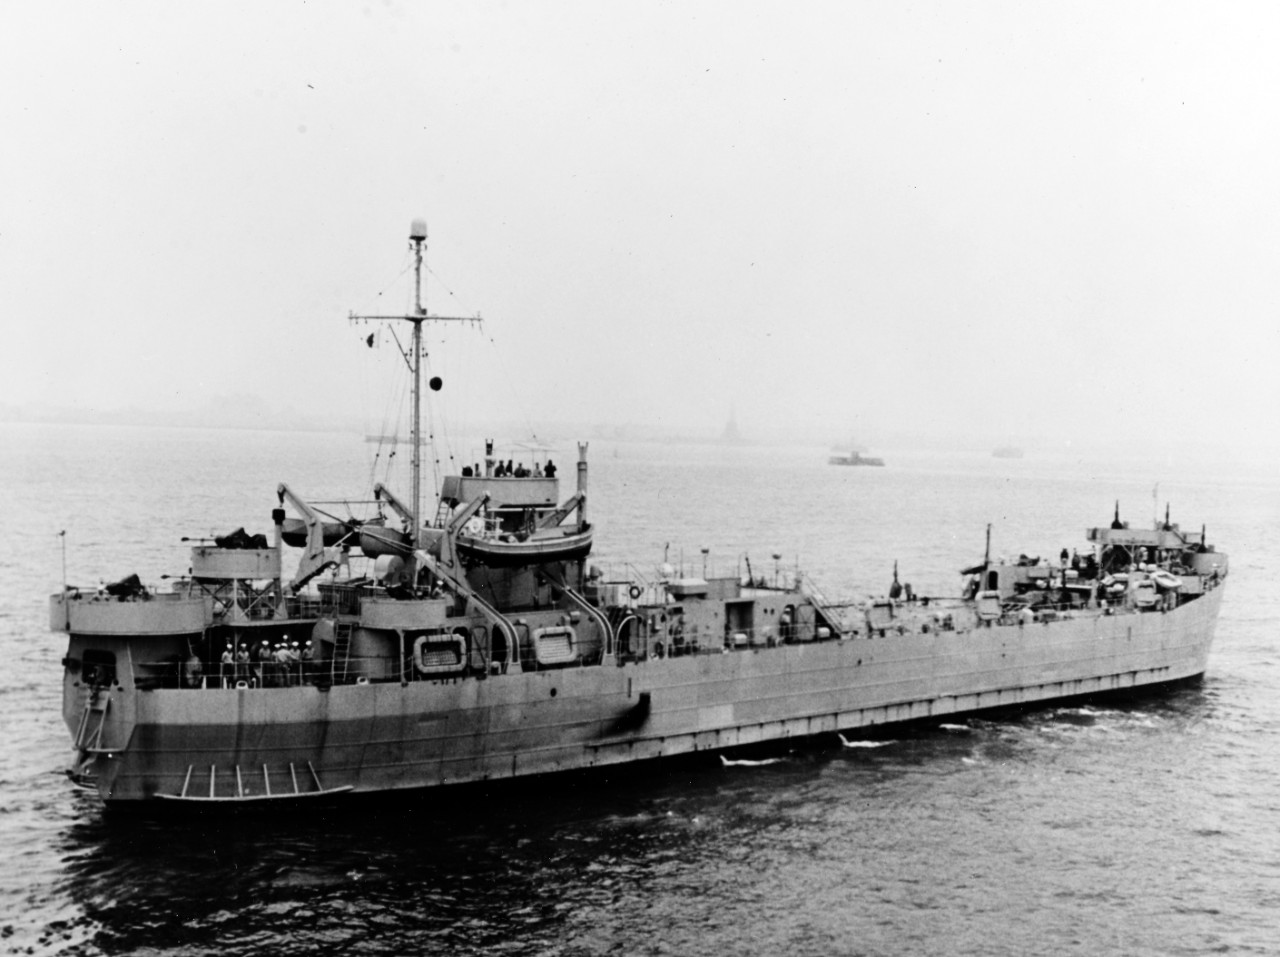 PAITA (Peruvian LST, 1943)